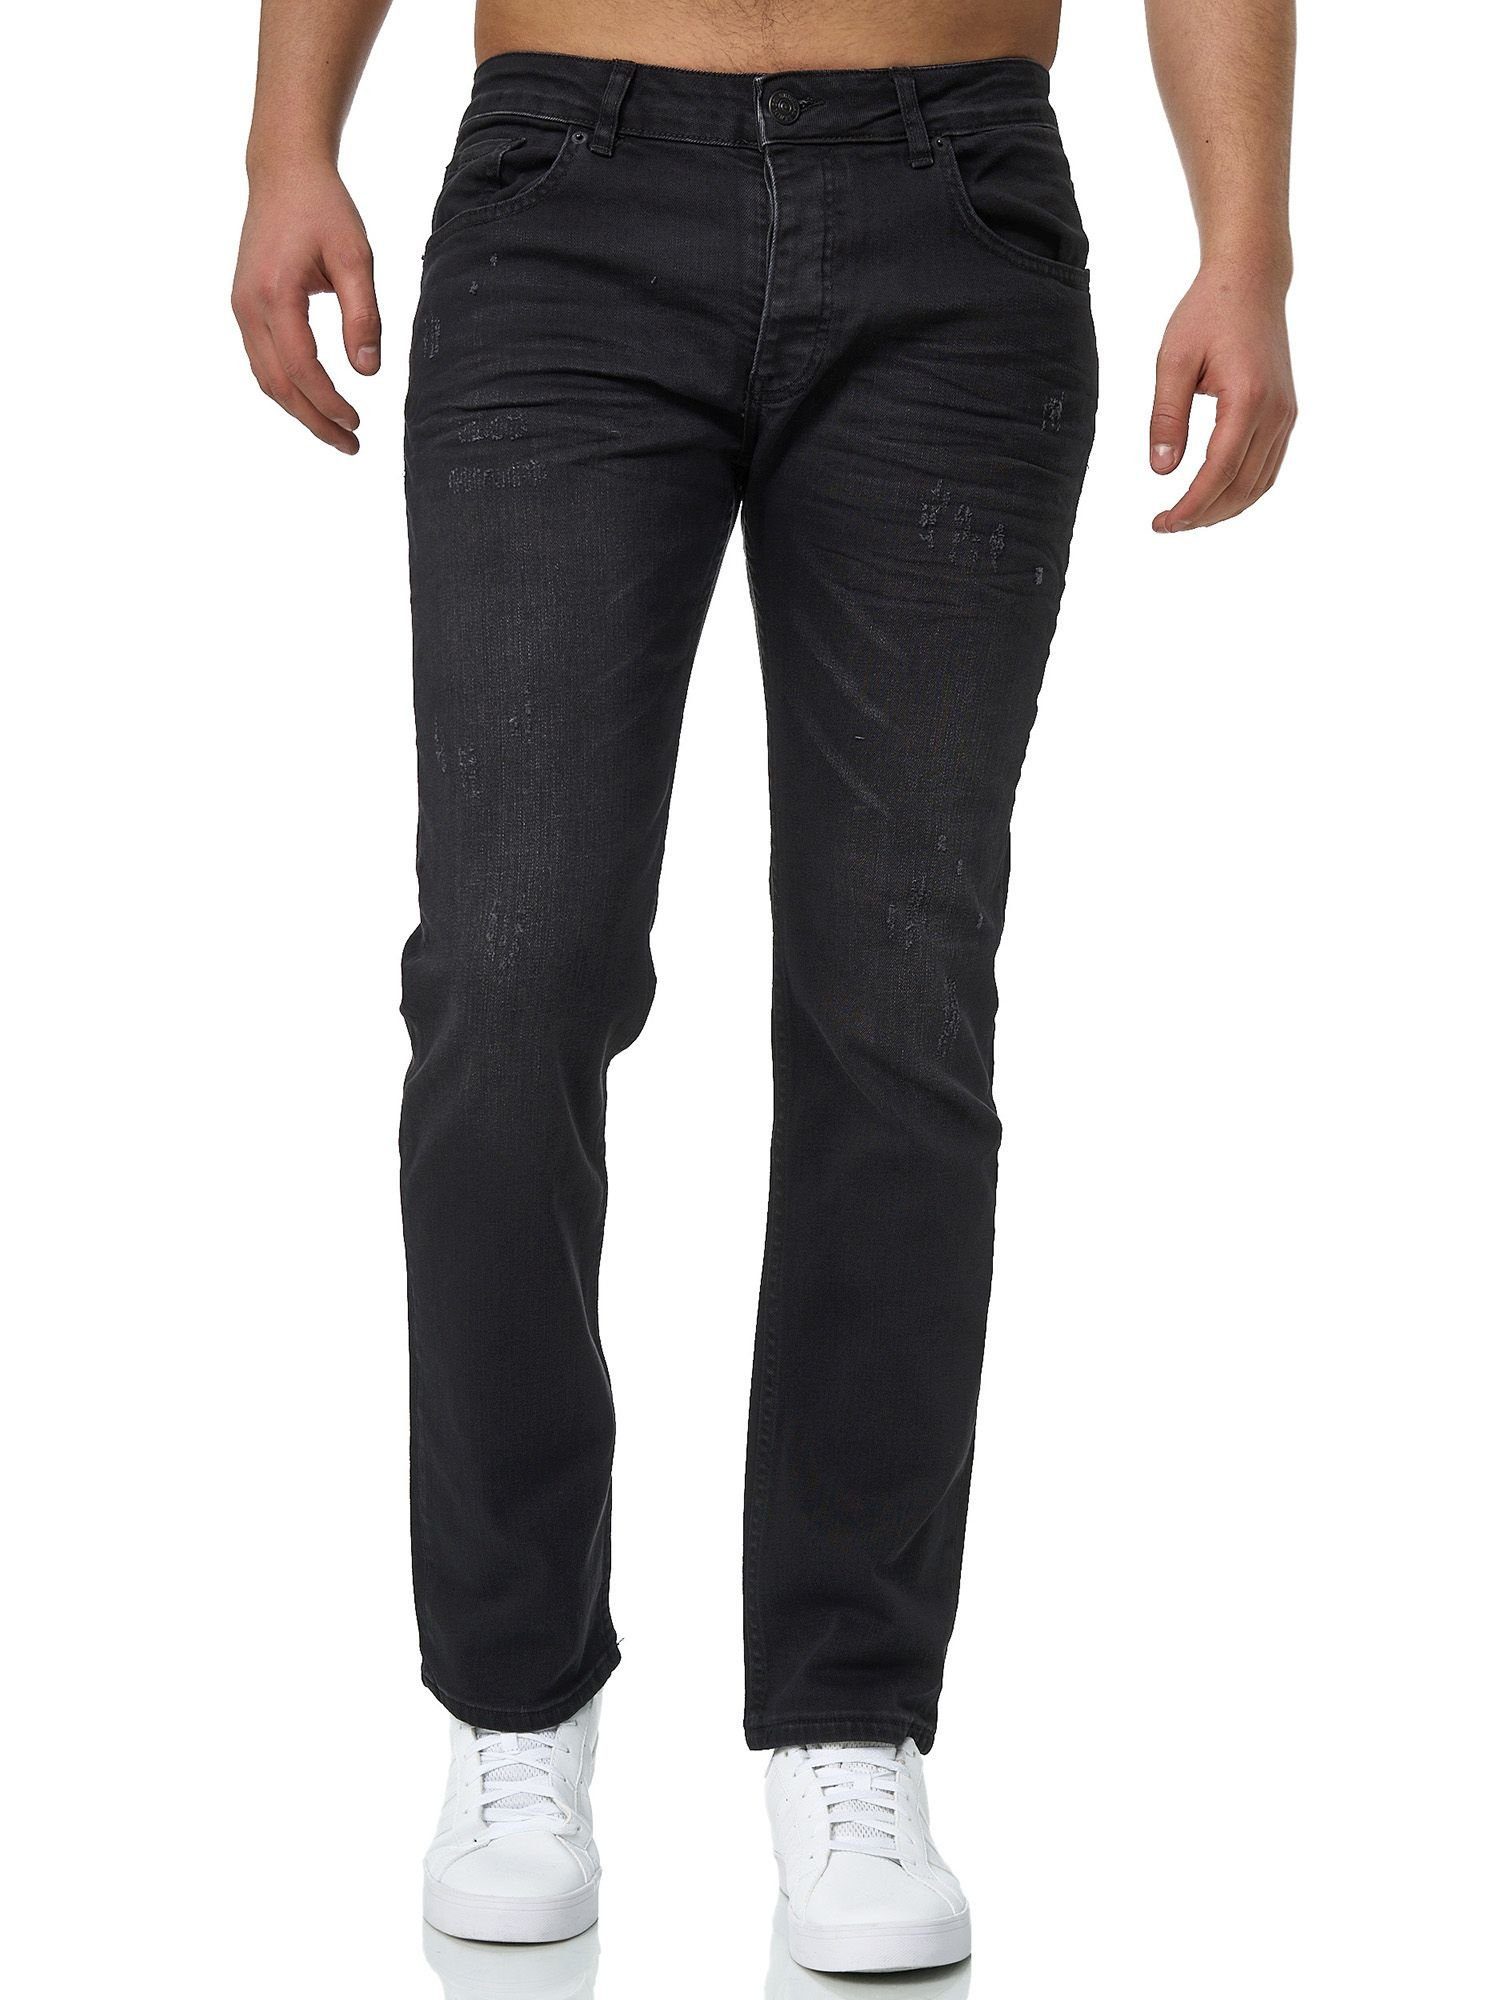 John Kayna Basic Business Skinny 603 Slim-fit-Jeans Used Slim Freizeit Männer Herren Designerj Casual Fit (Jeanshose Designerjeans Bootcut, Stretch Denim 1-tlg) Jeans Hose Black Midnight